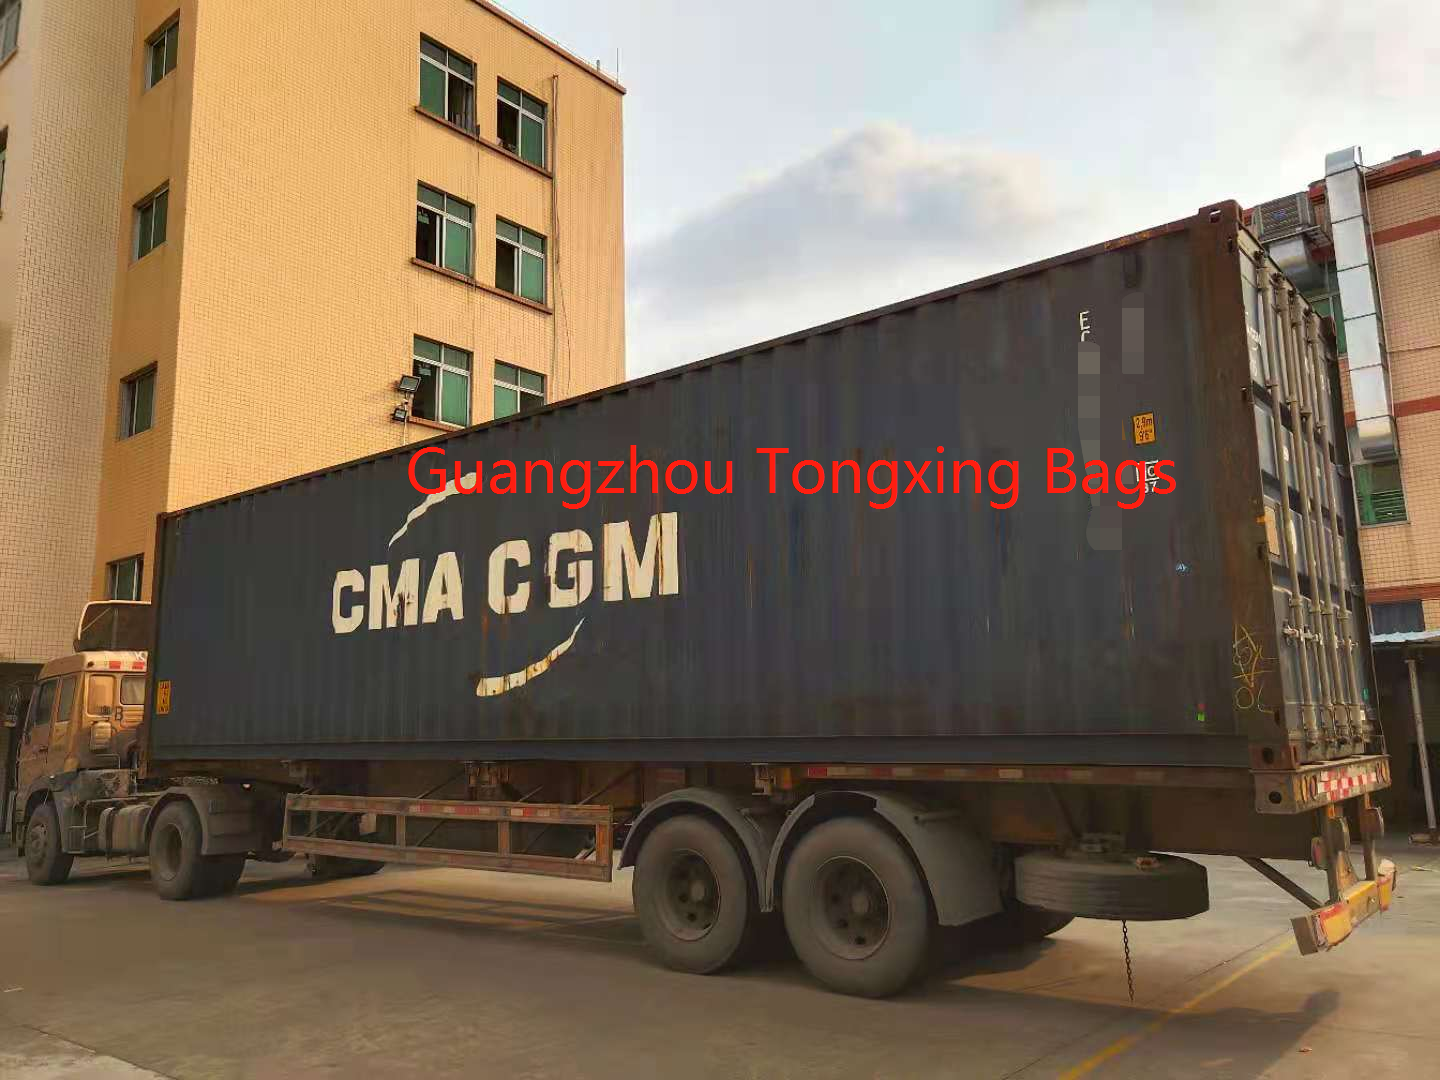 Loading Container—Guangzhou Tongxing Bags